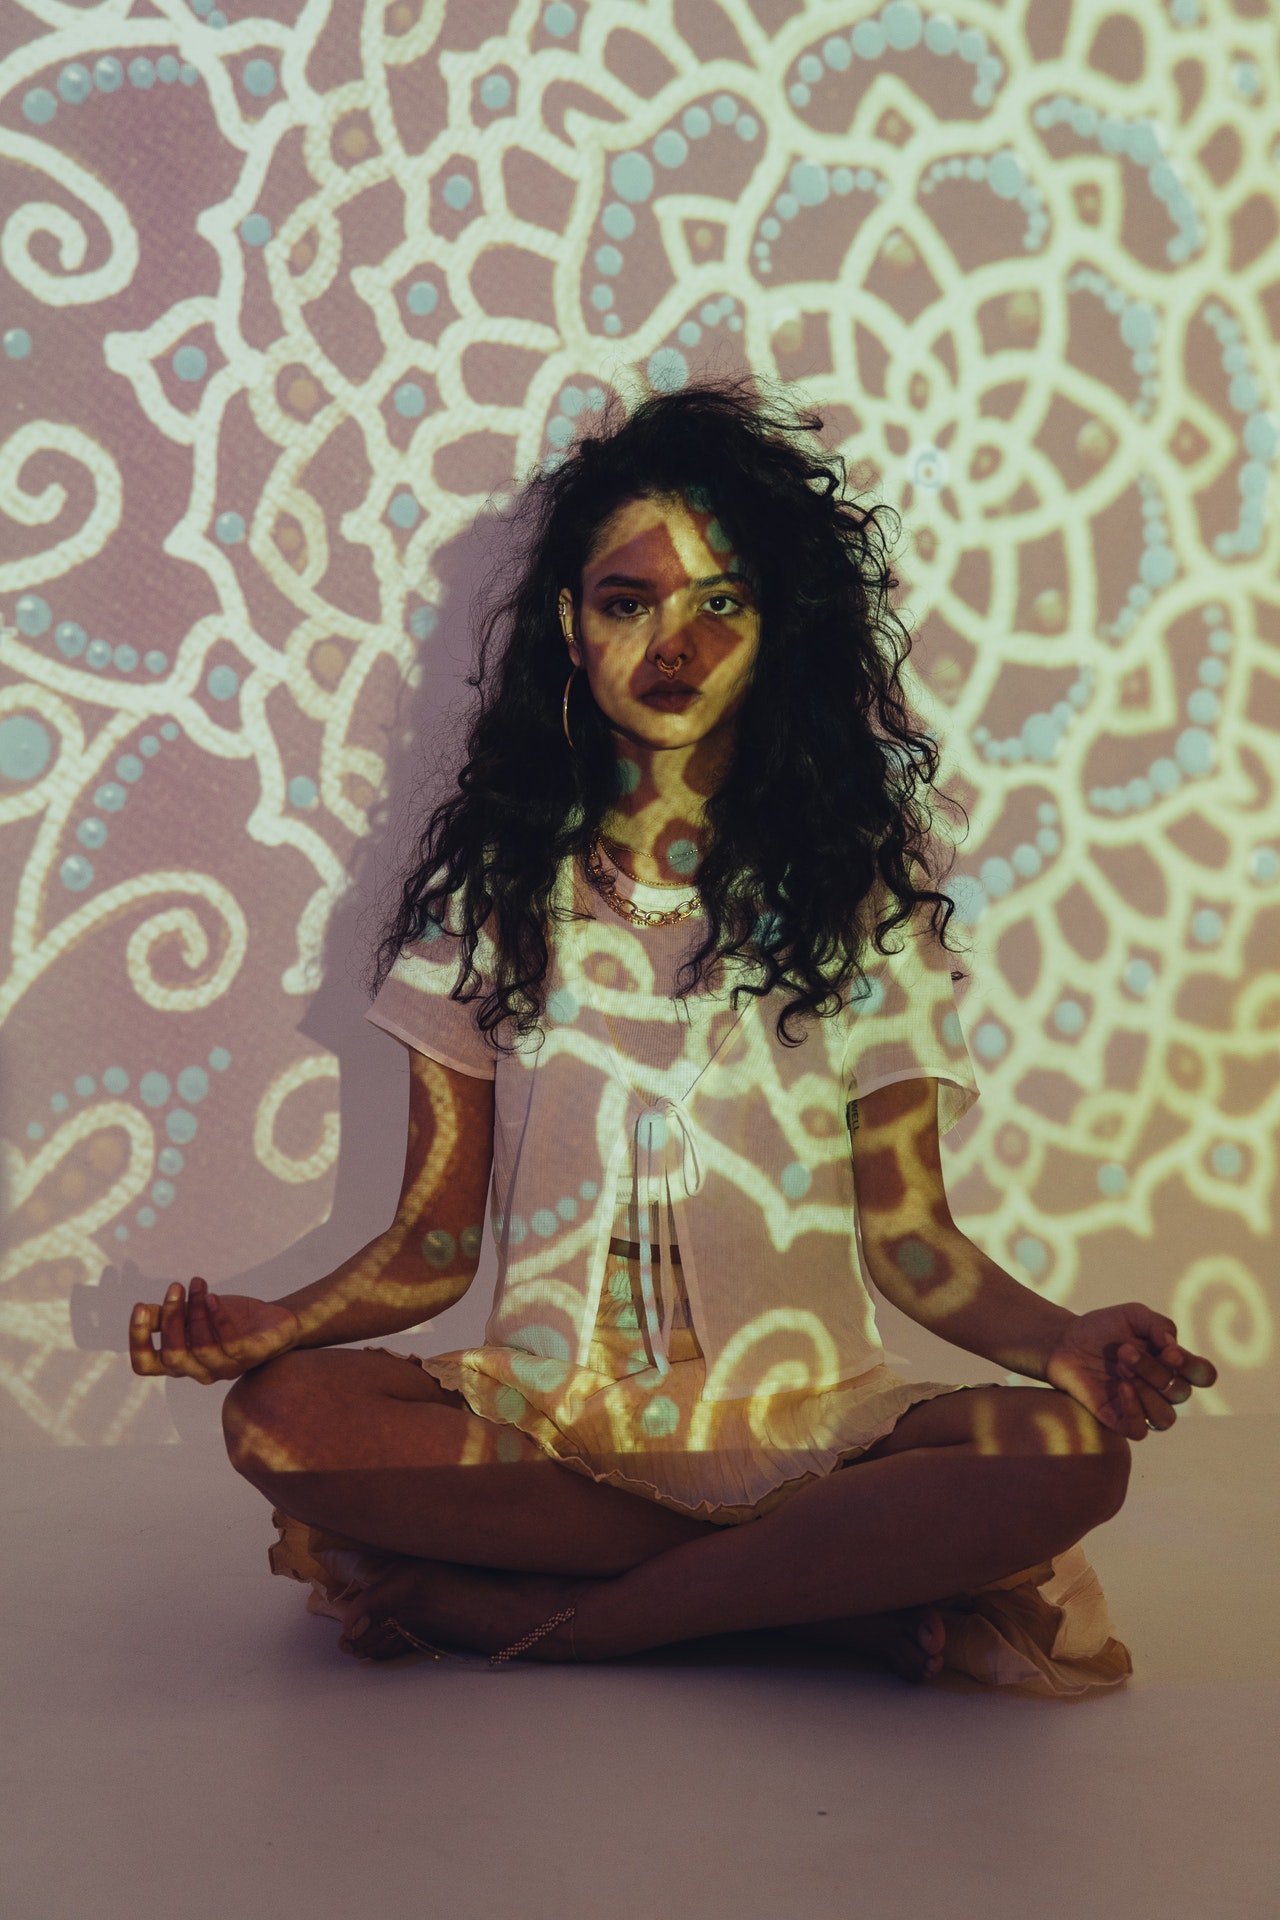 Girl meditating in fractal lights